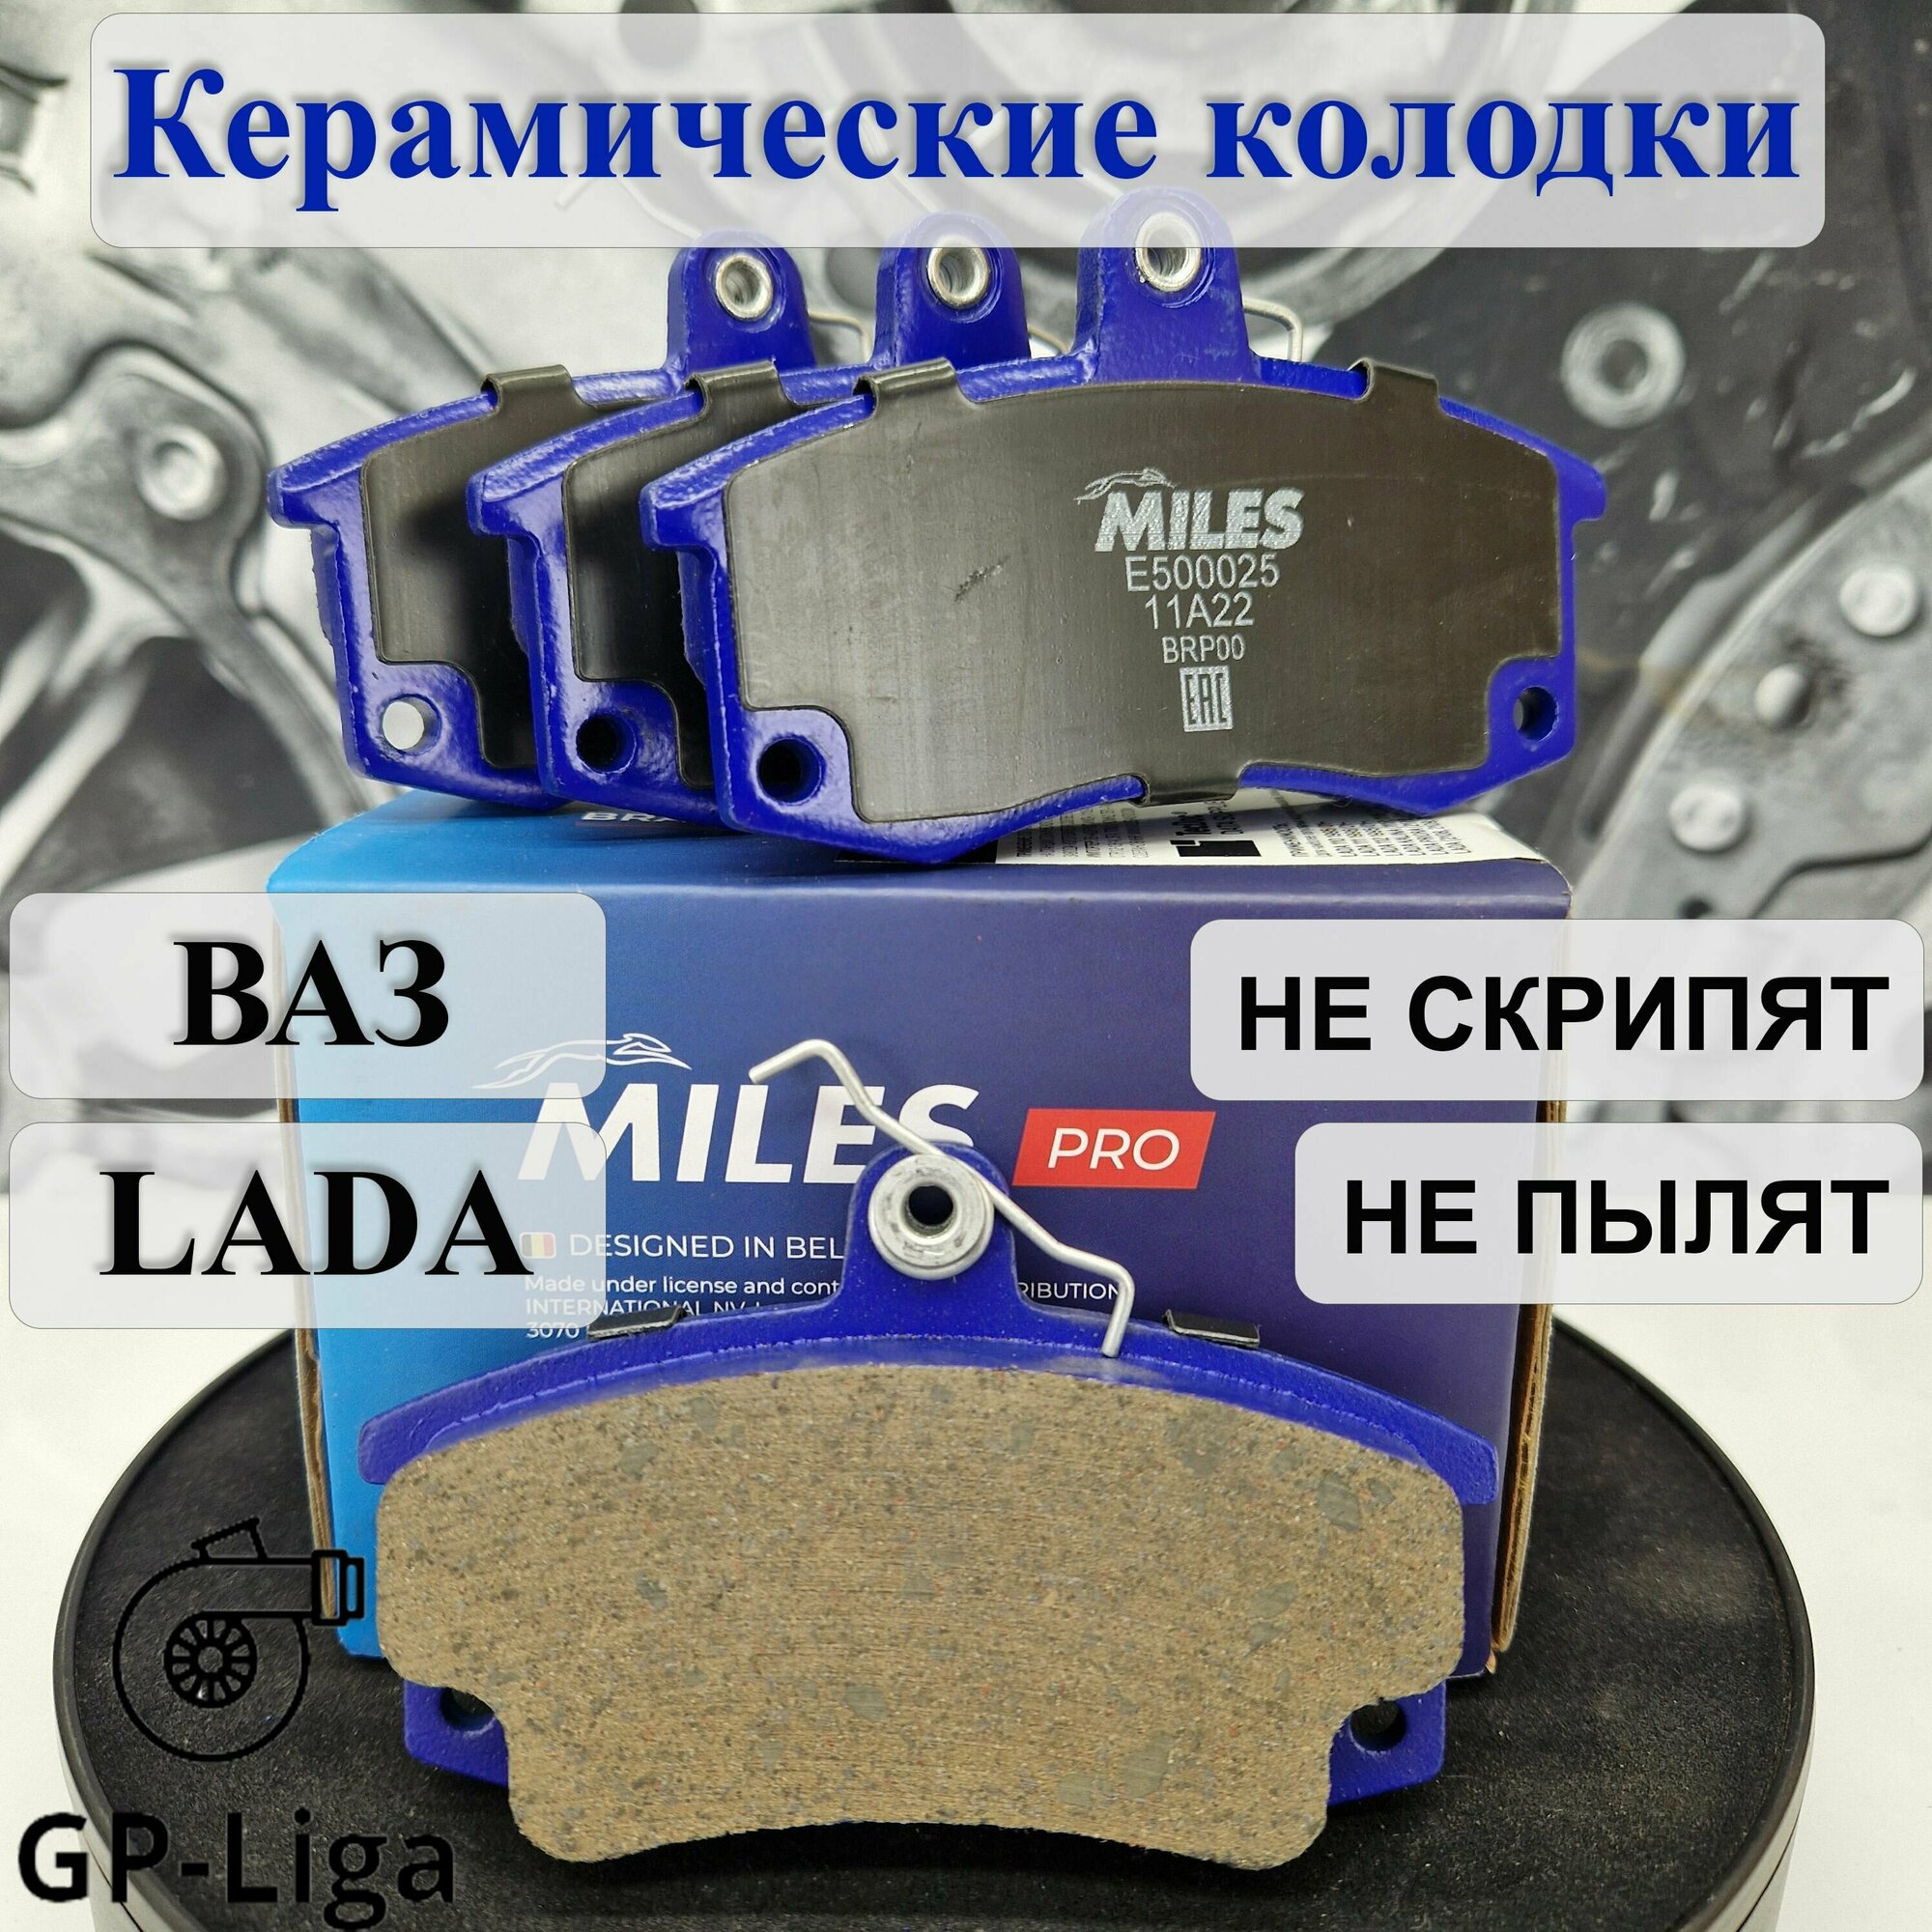 Колодки передние (керамика) для Lada Priora, Granta, Kalina, ВАЗ 2108-2112 (Смесь Ceramic)